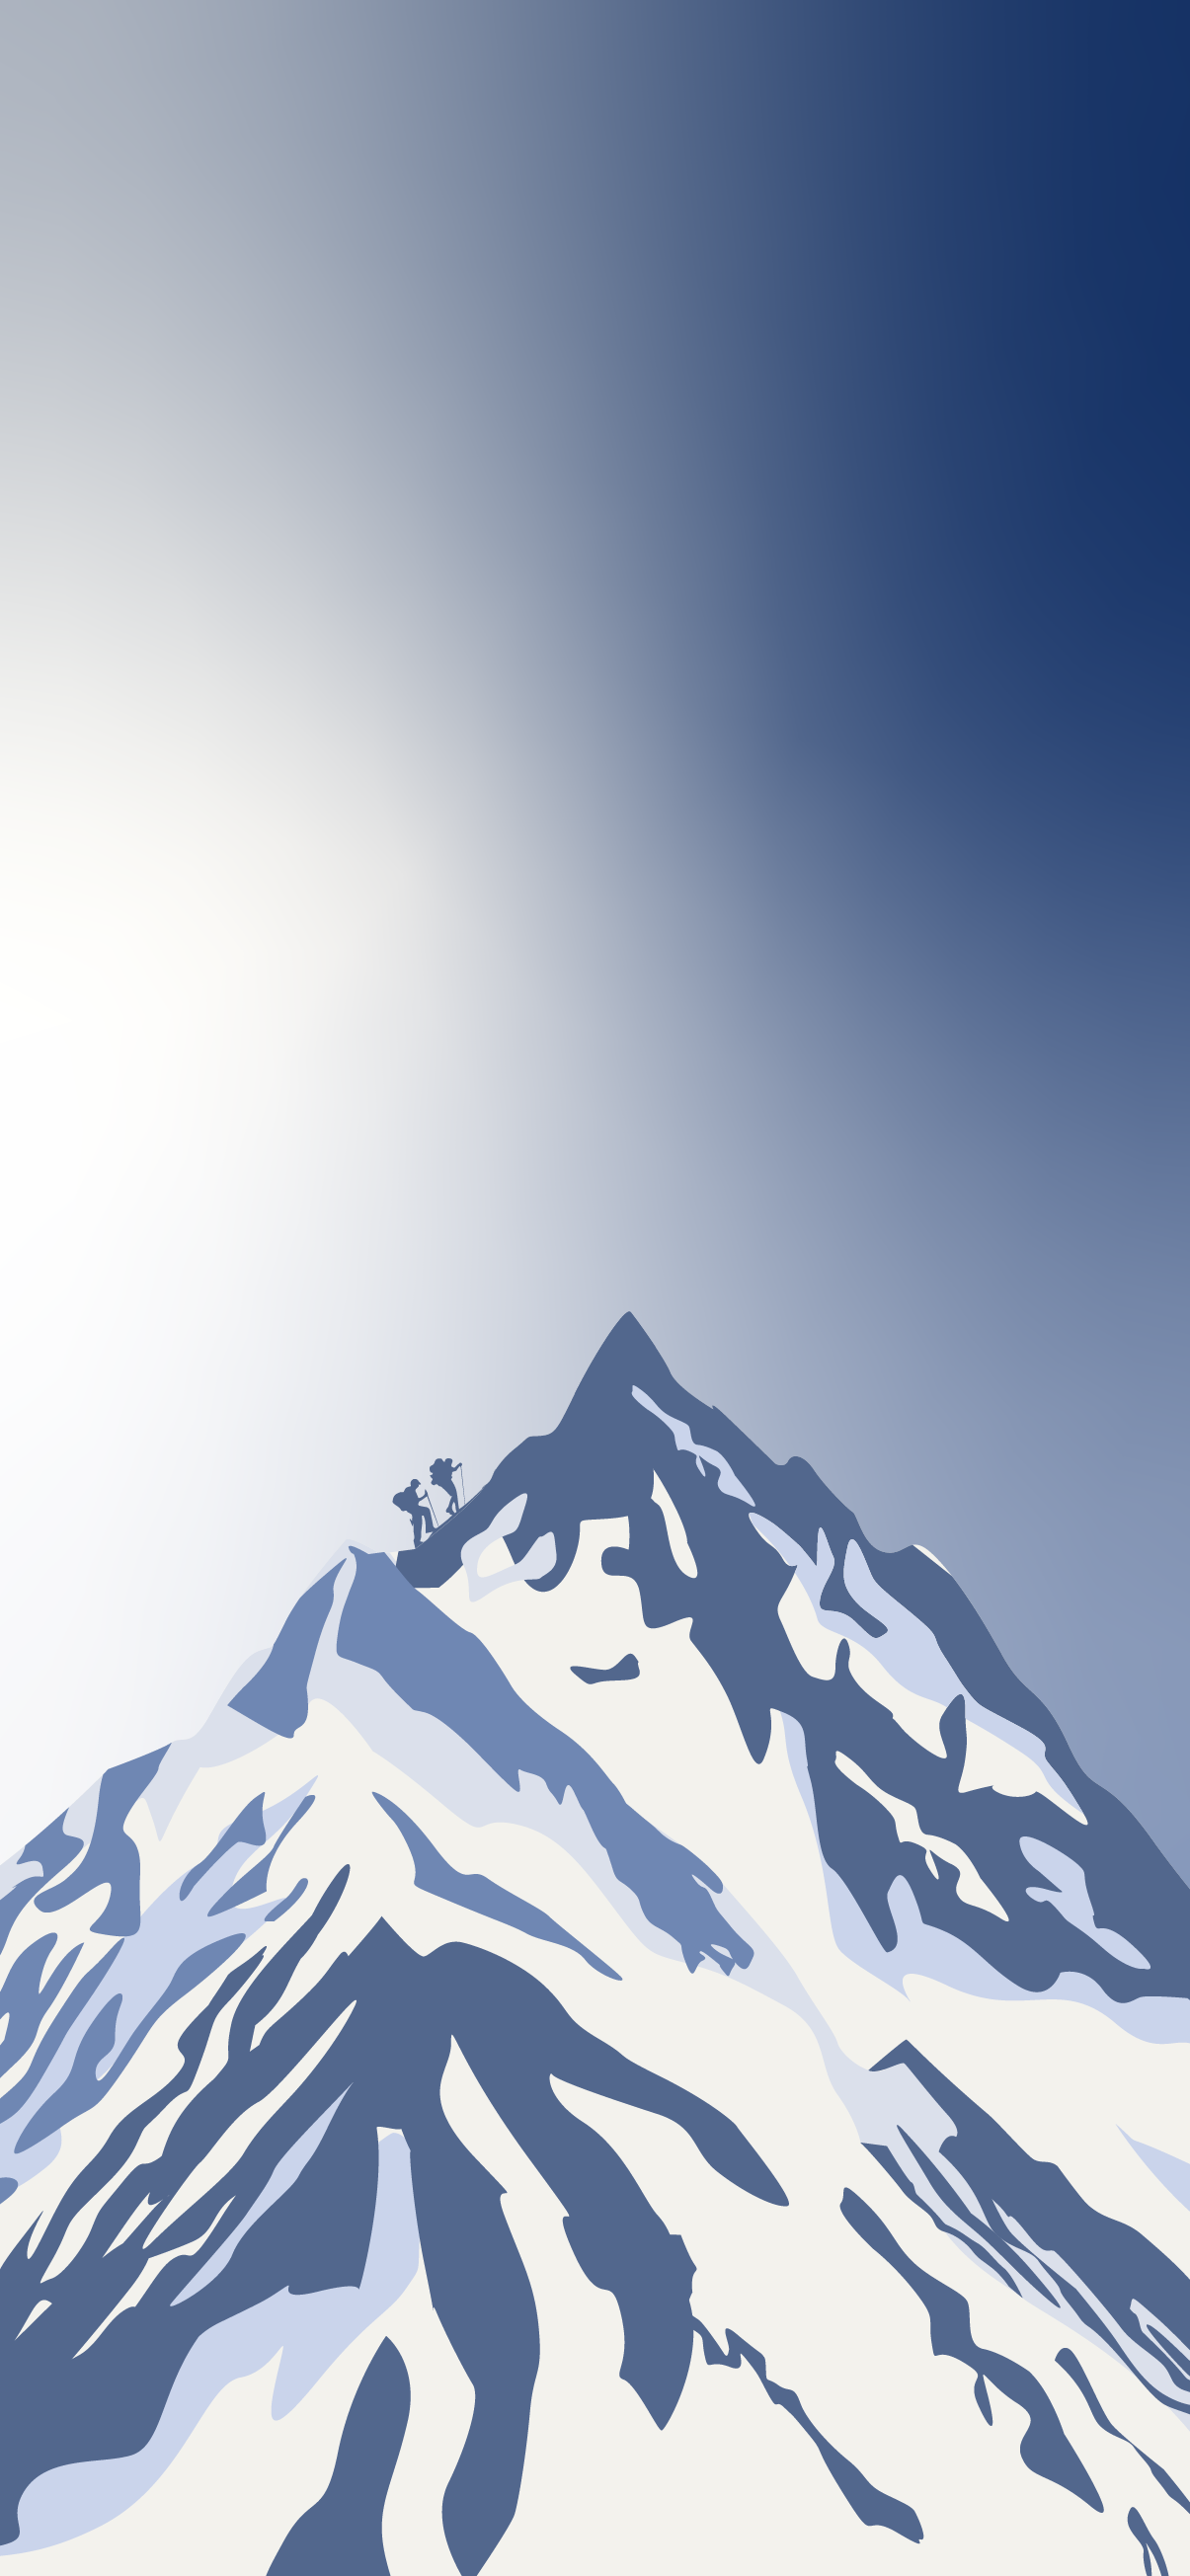 Minimalism Mountain Peak Wallpapers